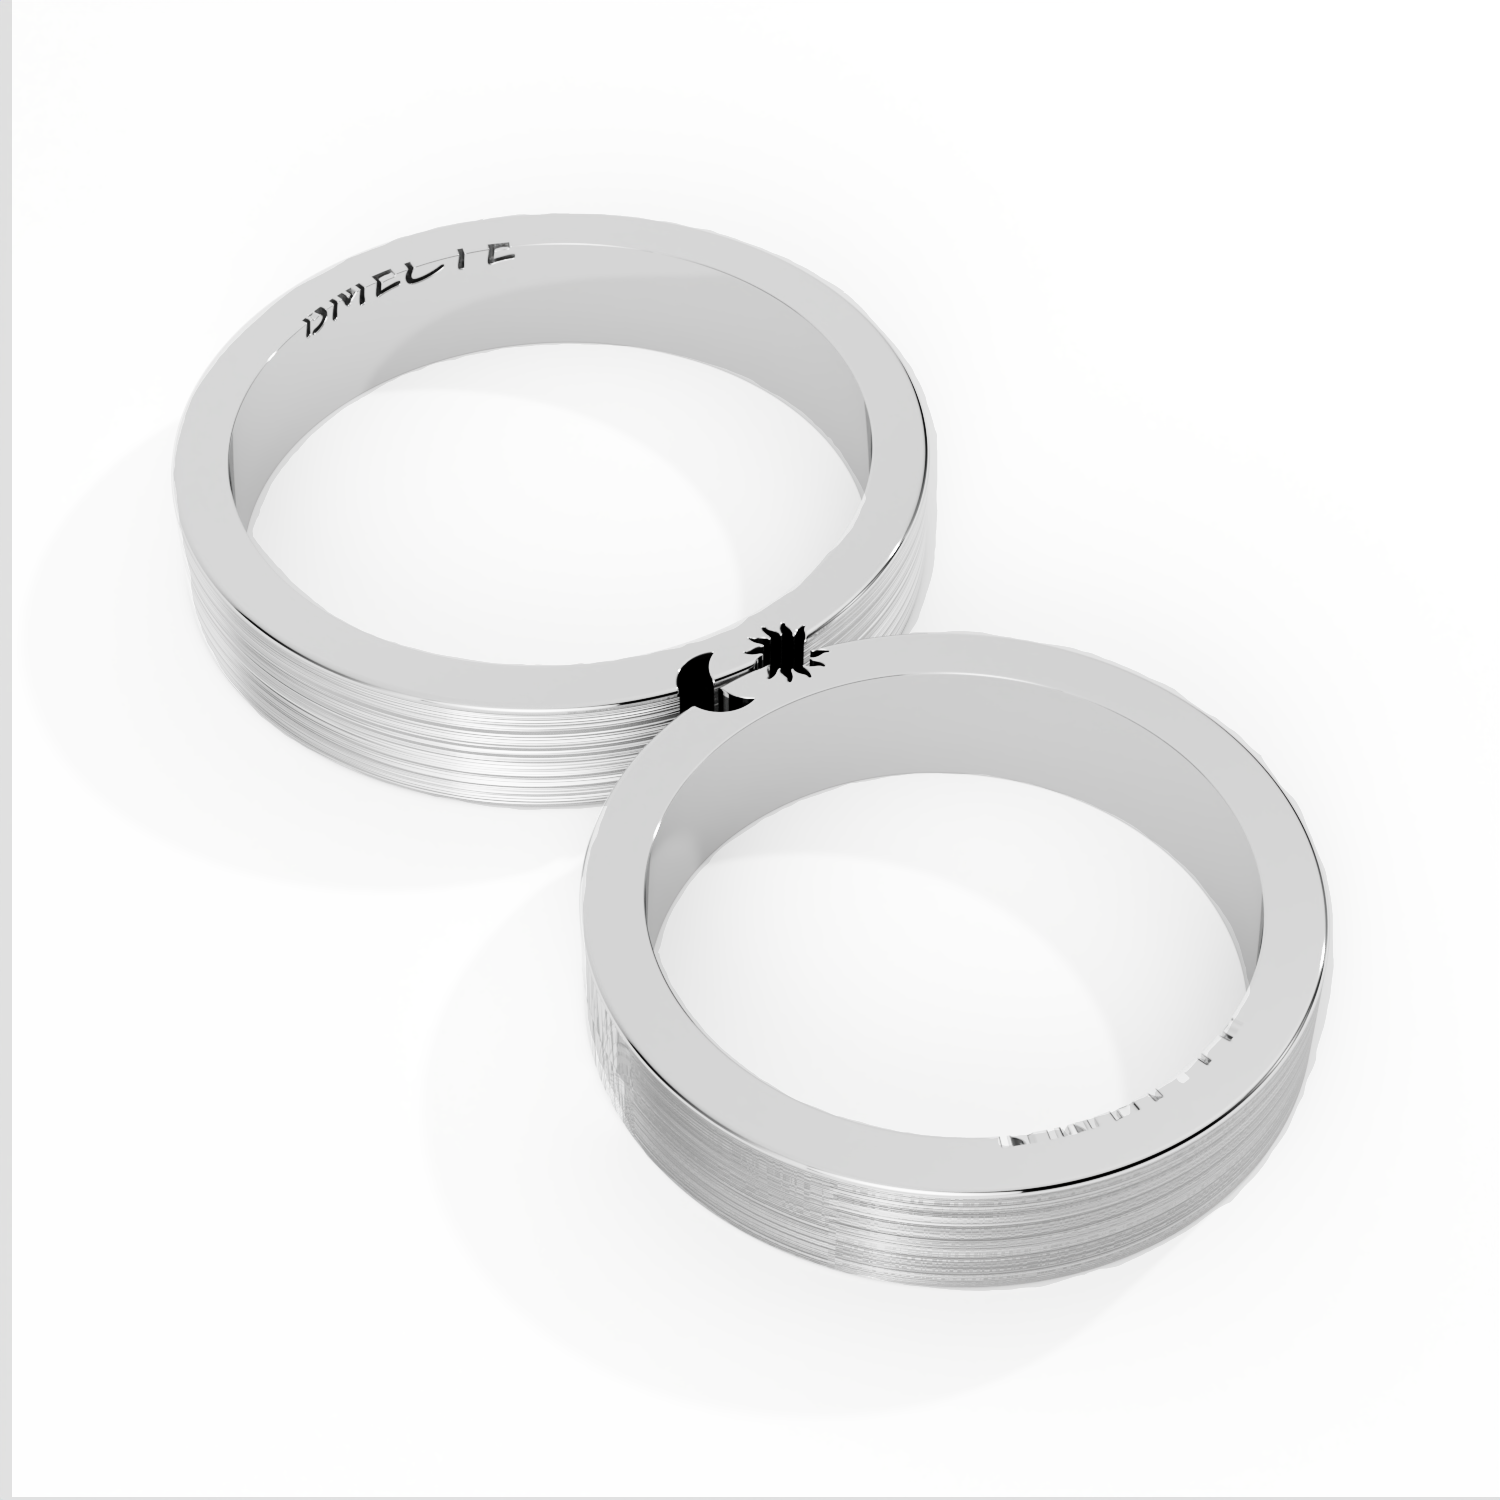 Обручальные парные кольца из белого золота 750 пробы (Pazzle3)